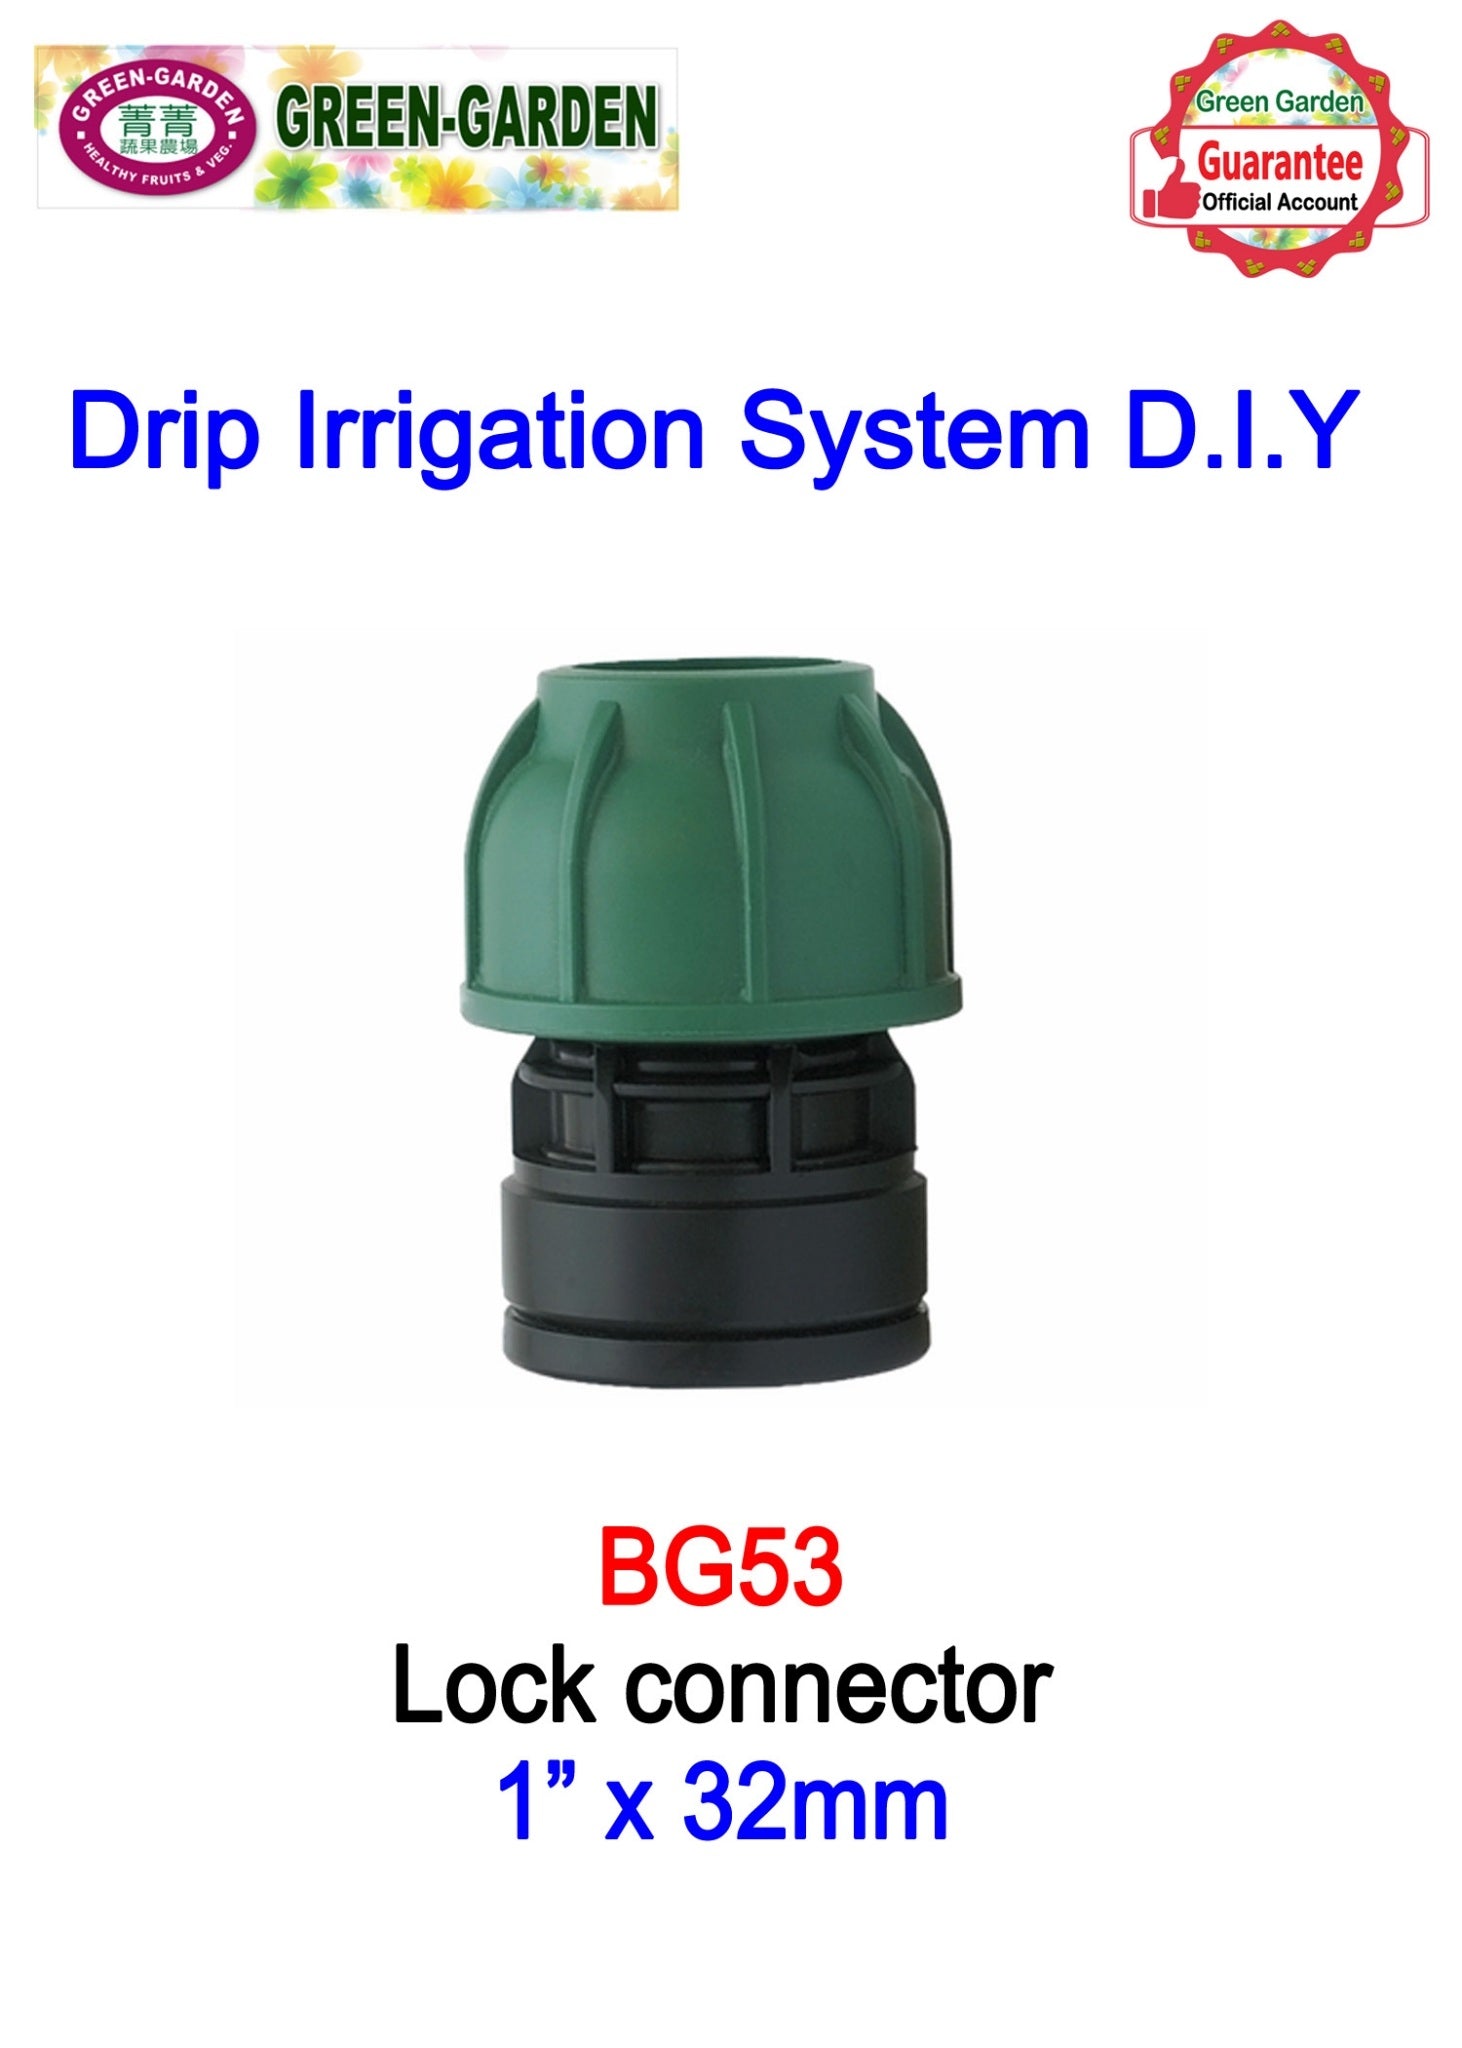 Drip Irrigation System - 1" female x32mm lock connector BG53